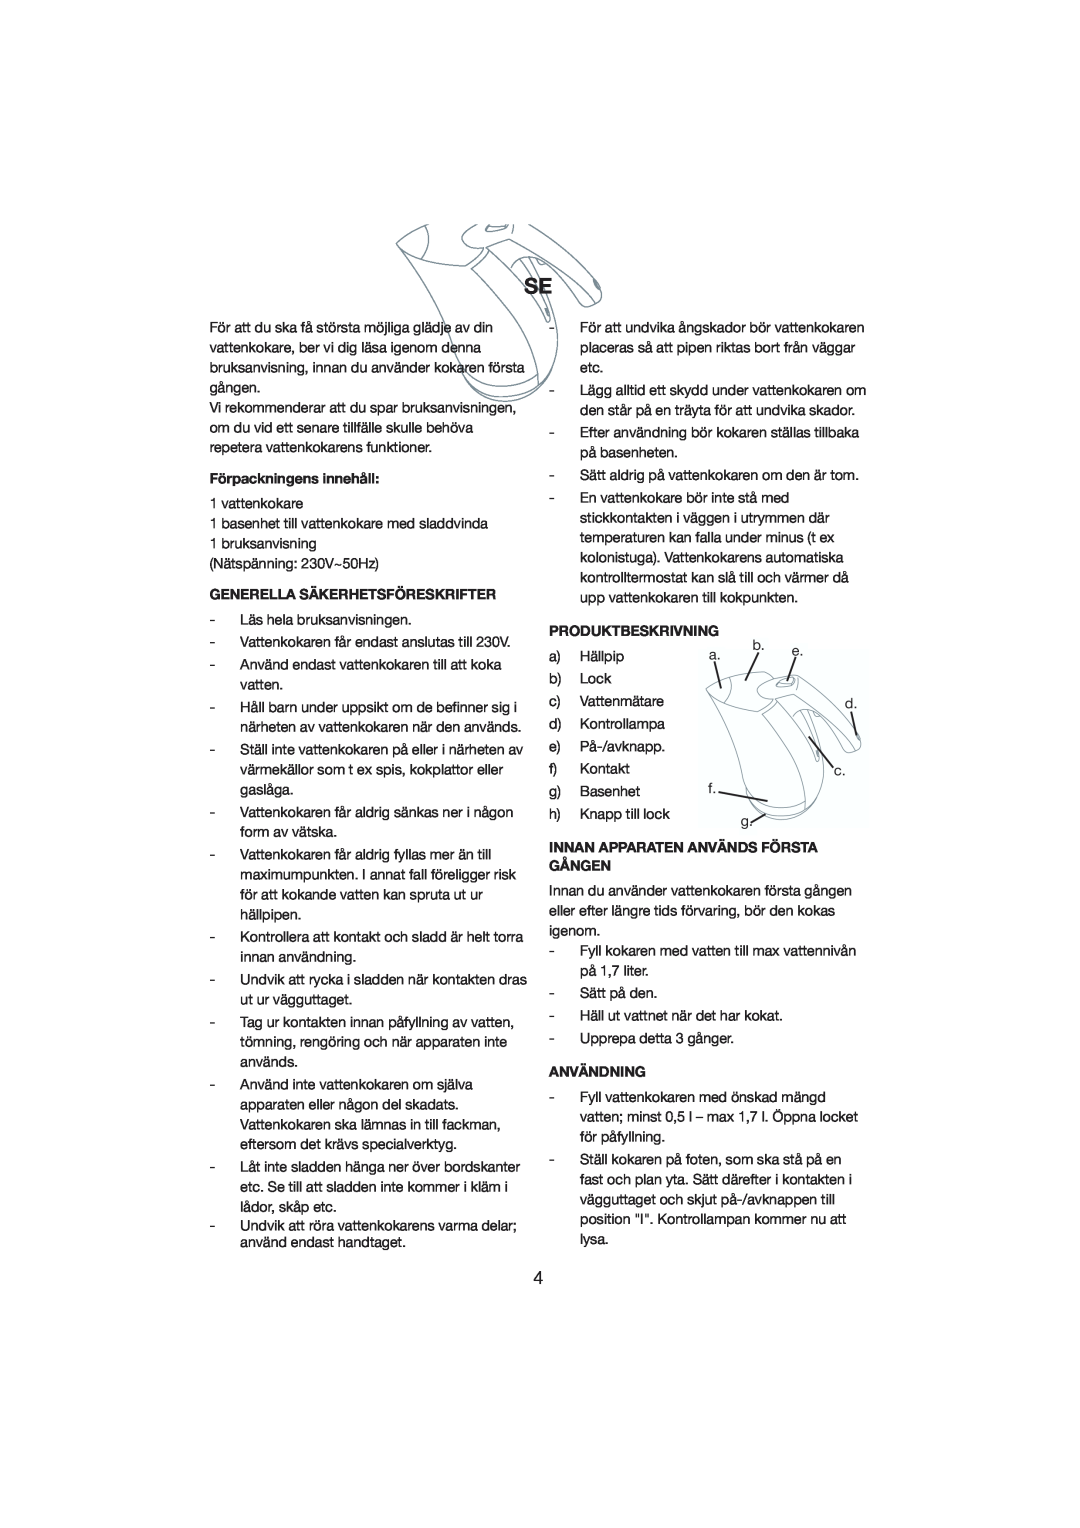 Melissa 245-023 manual Förpackningens innehåll, Generella Säkerhetsföreskrifter, Produktbeskrivning, Användning 